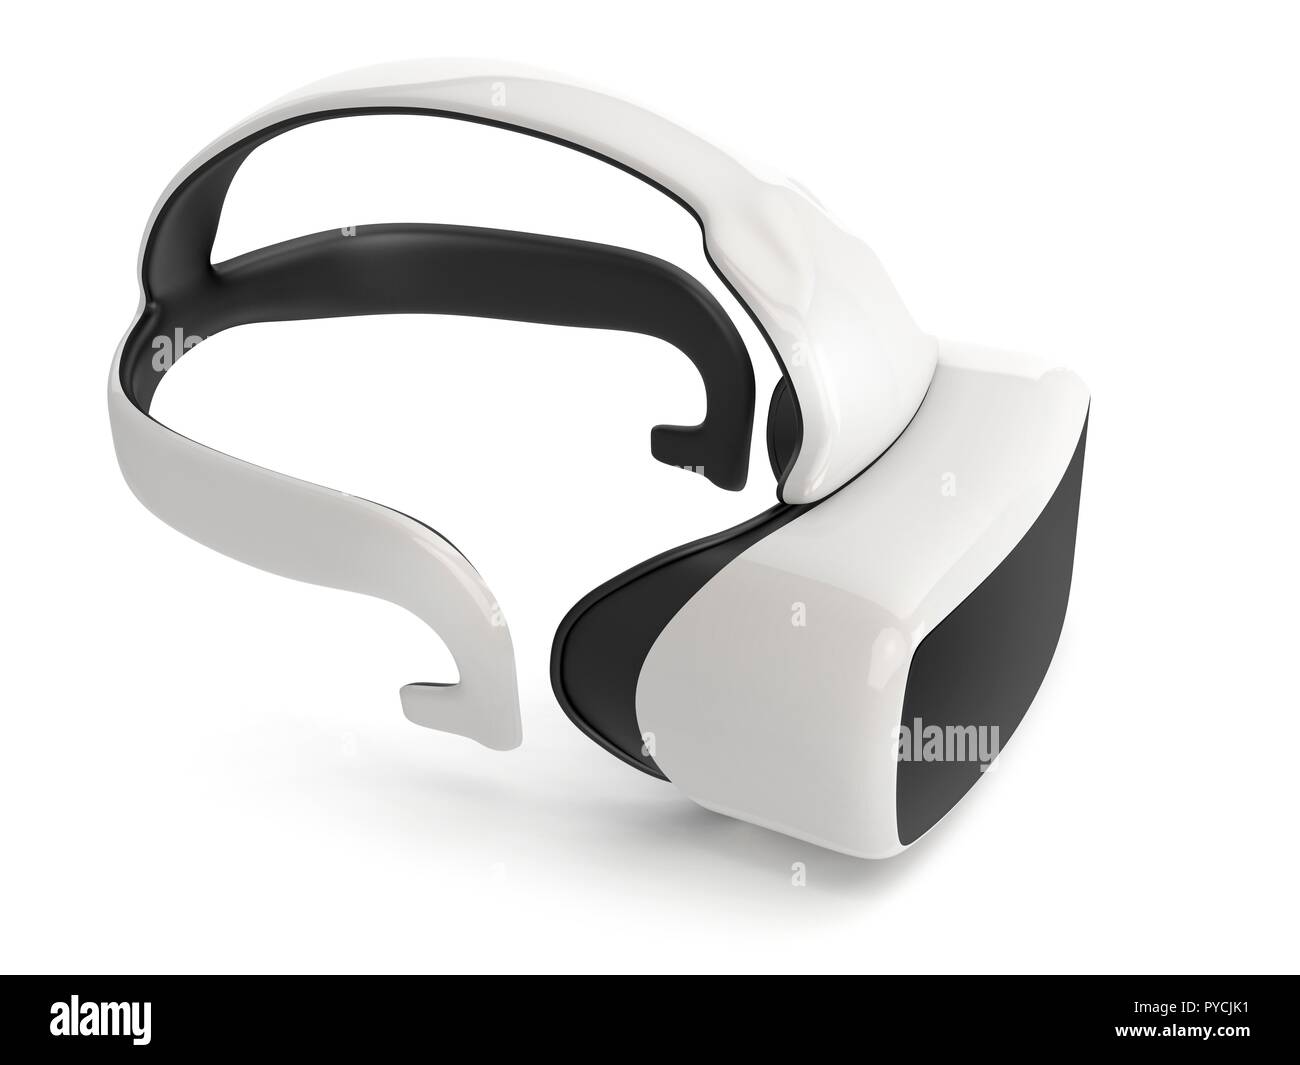 Casco de realidad virtual sobre fondo blanco, ilustración. Foto de stock